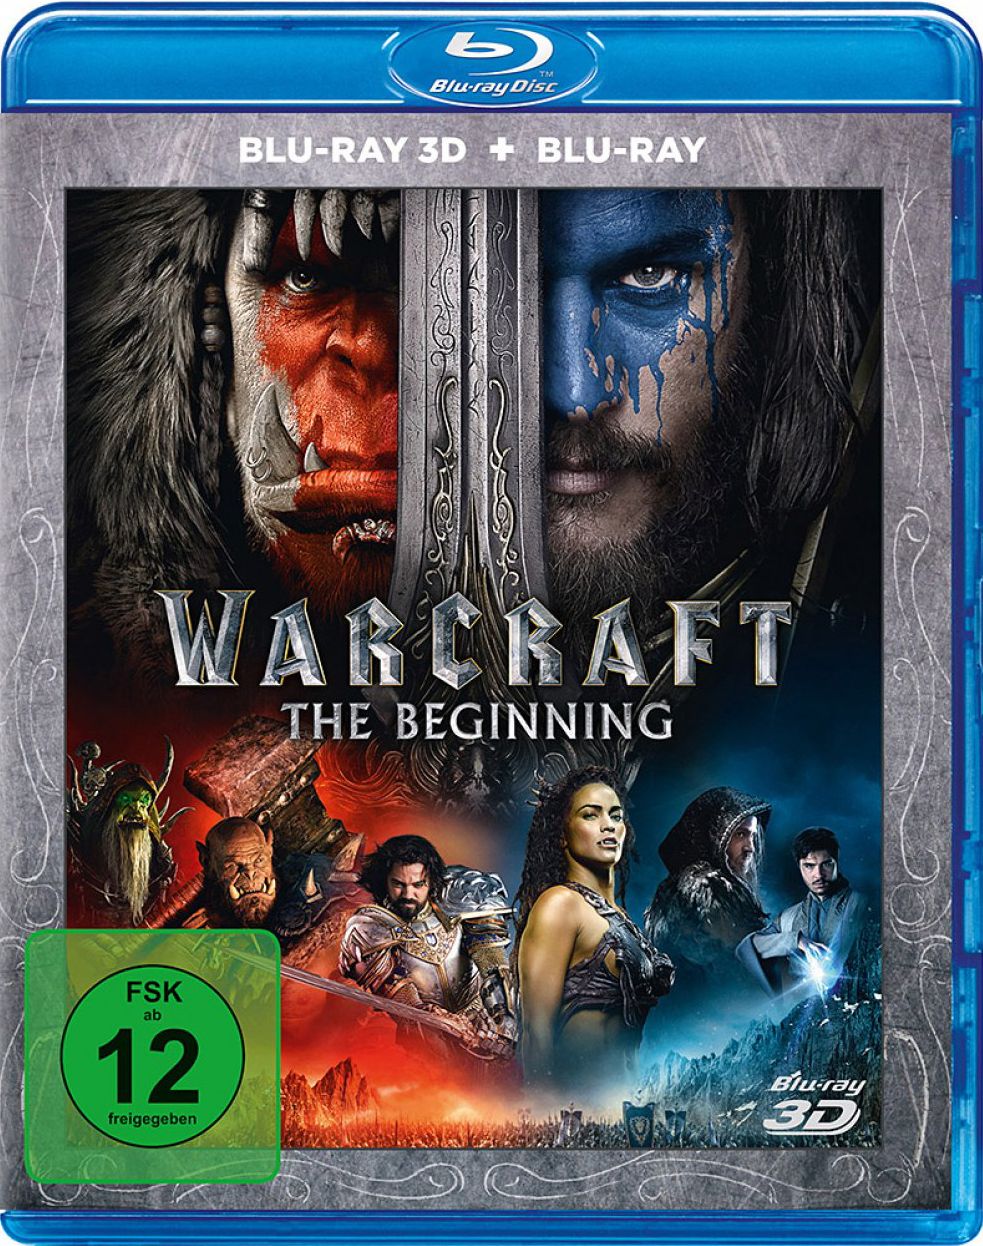 Warcraft - The Beginning 3D (2 Discs) (BLURAY + BLURAY 3D)